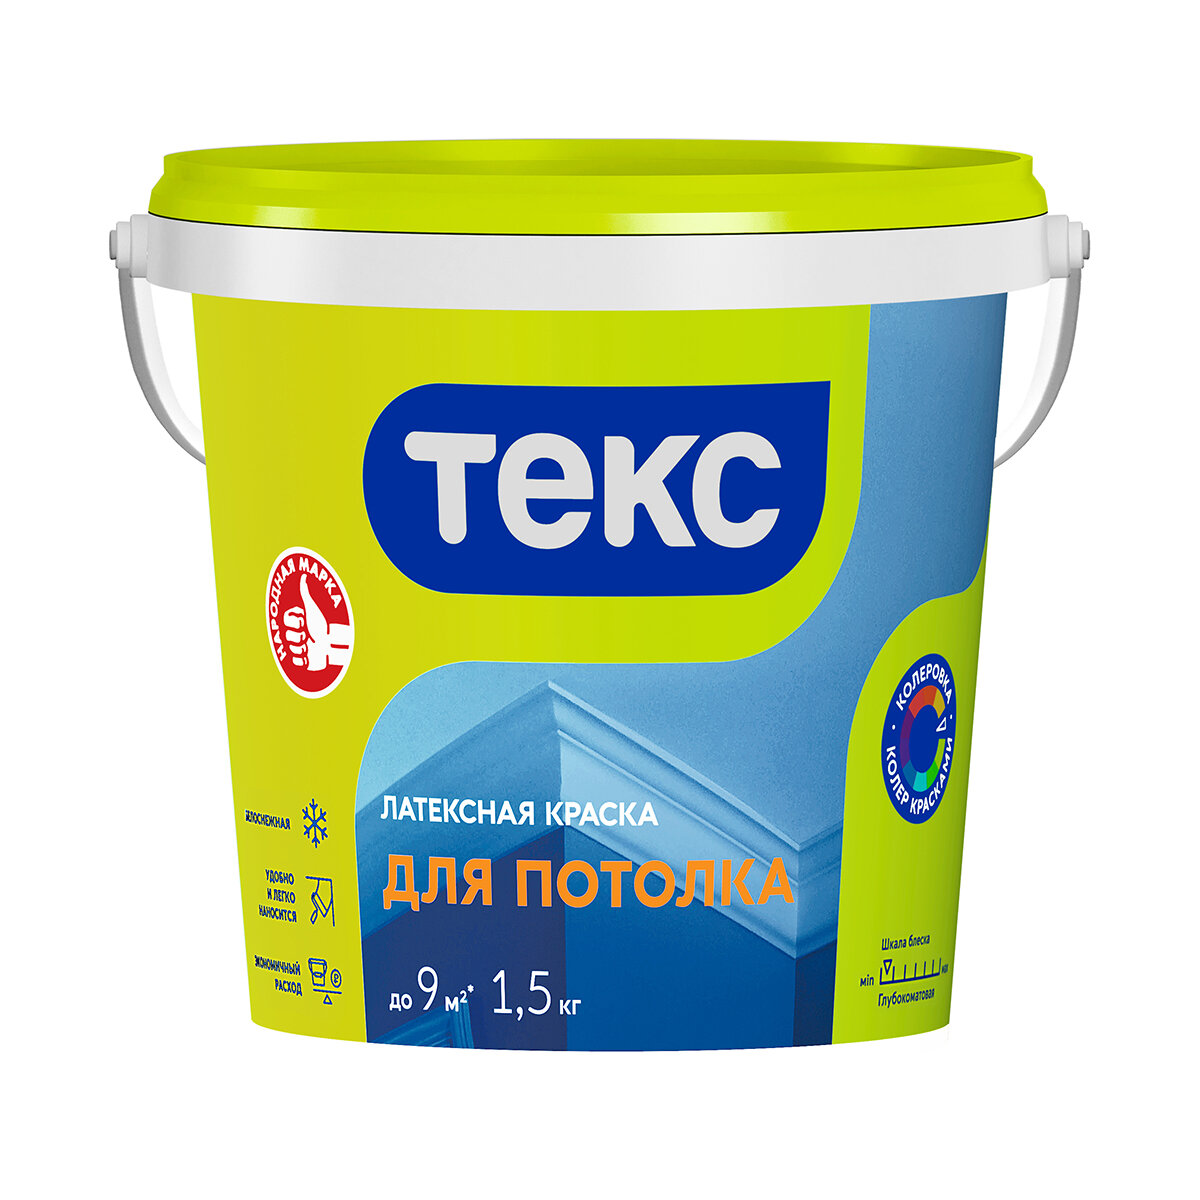 Текс универсал для потолка краска водно-дисперсионная, глубокоматовая (1,5кг)